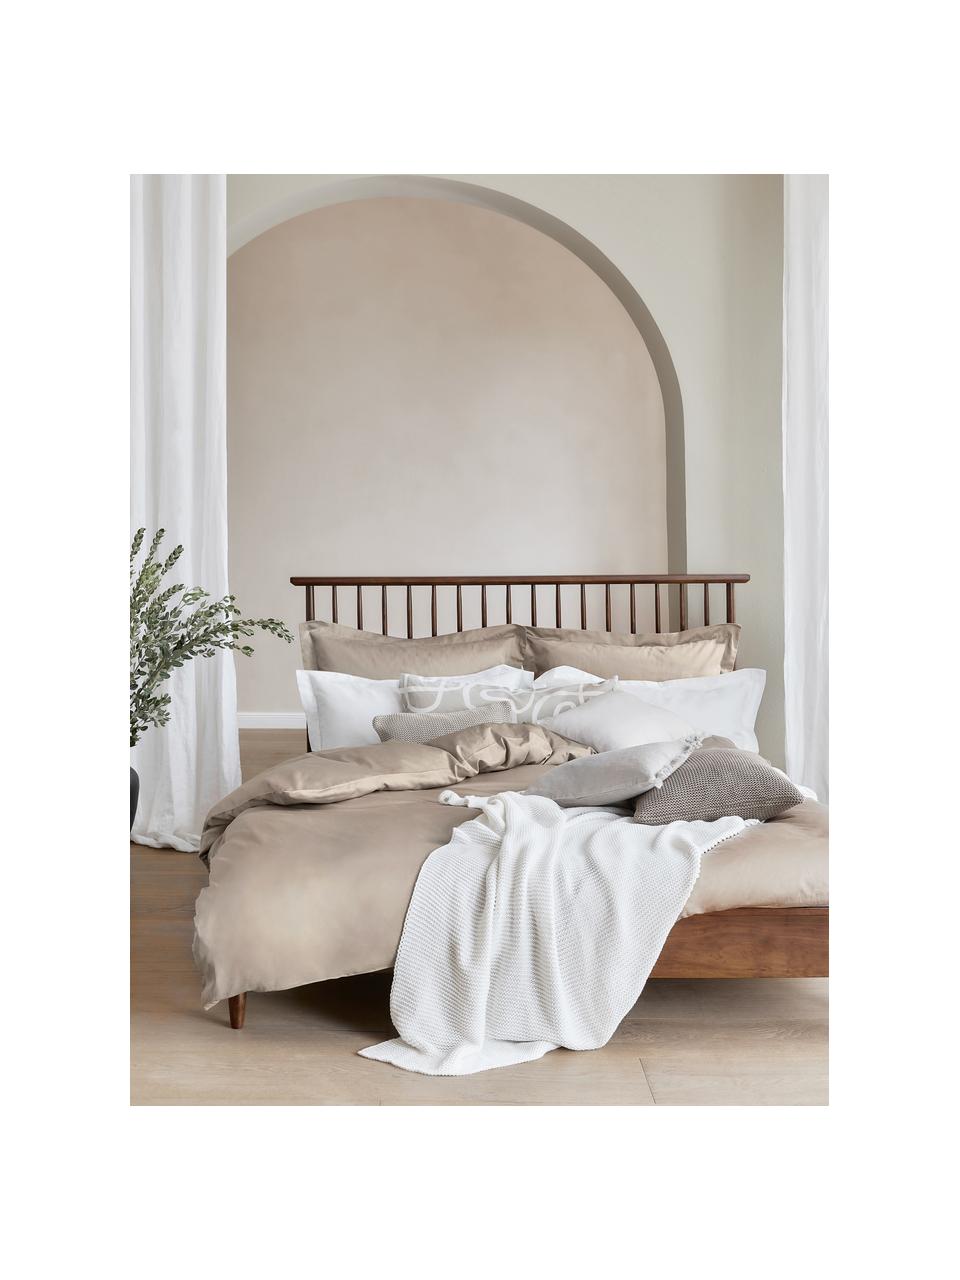 Saténová posteľná bielizeň z organickej bavlny so širokým lemom Premium, Sivobéžová, 135 x 200 cm + 1 vankúš 80 x 80 cm